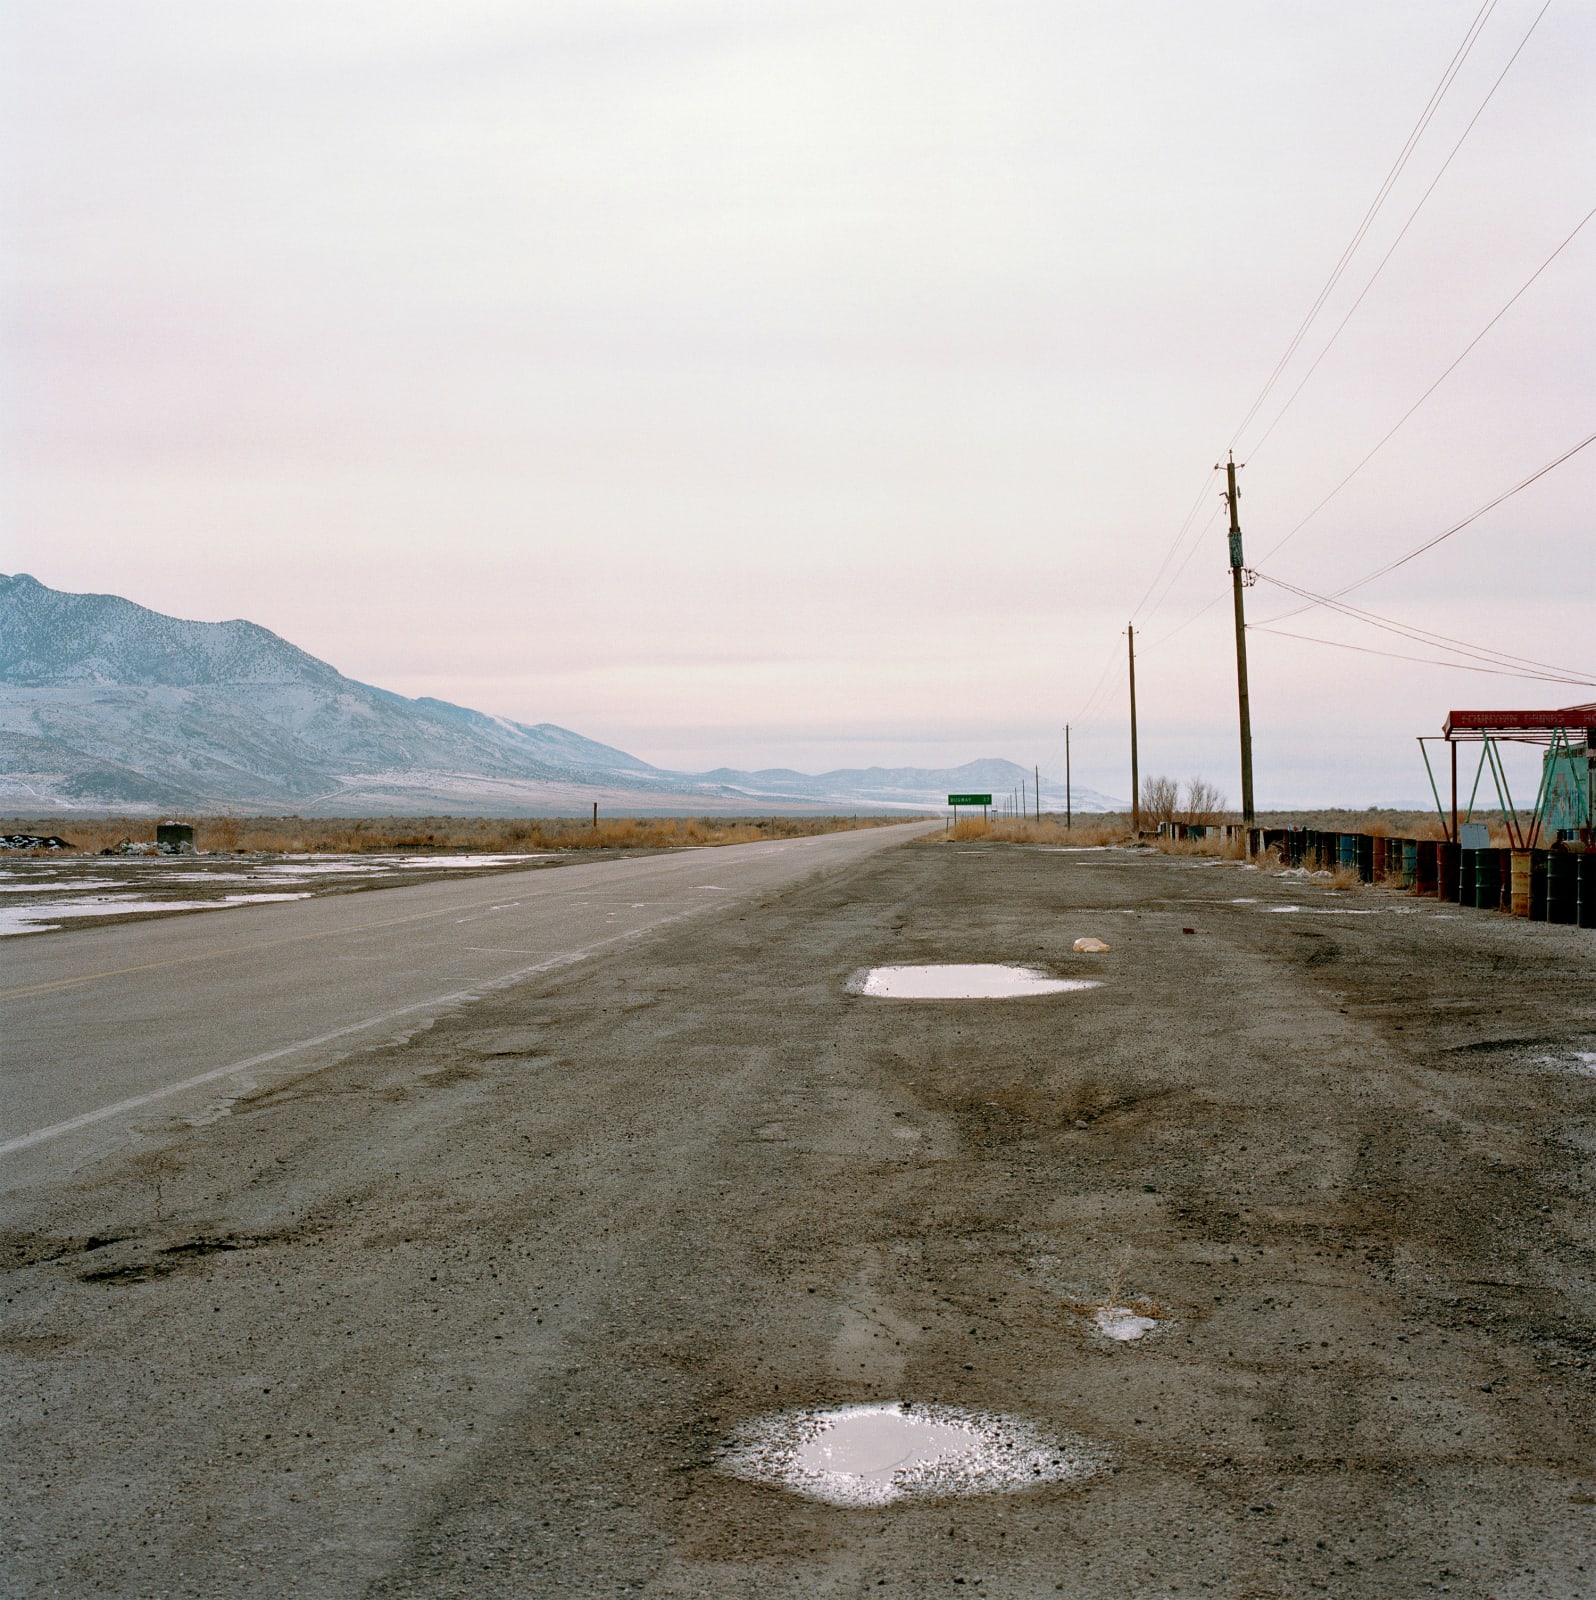 Jeff Brouws, Highway 196, Rowley Junction, Utah, 1995